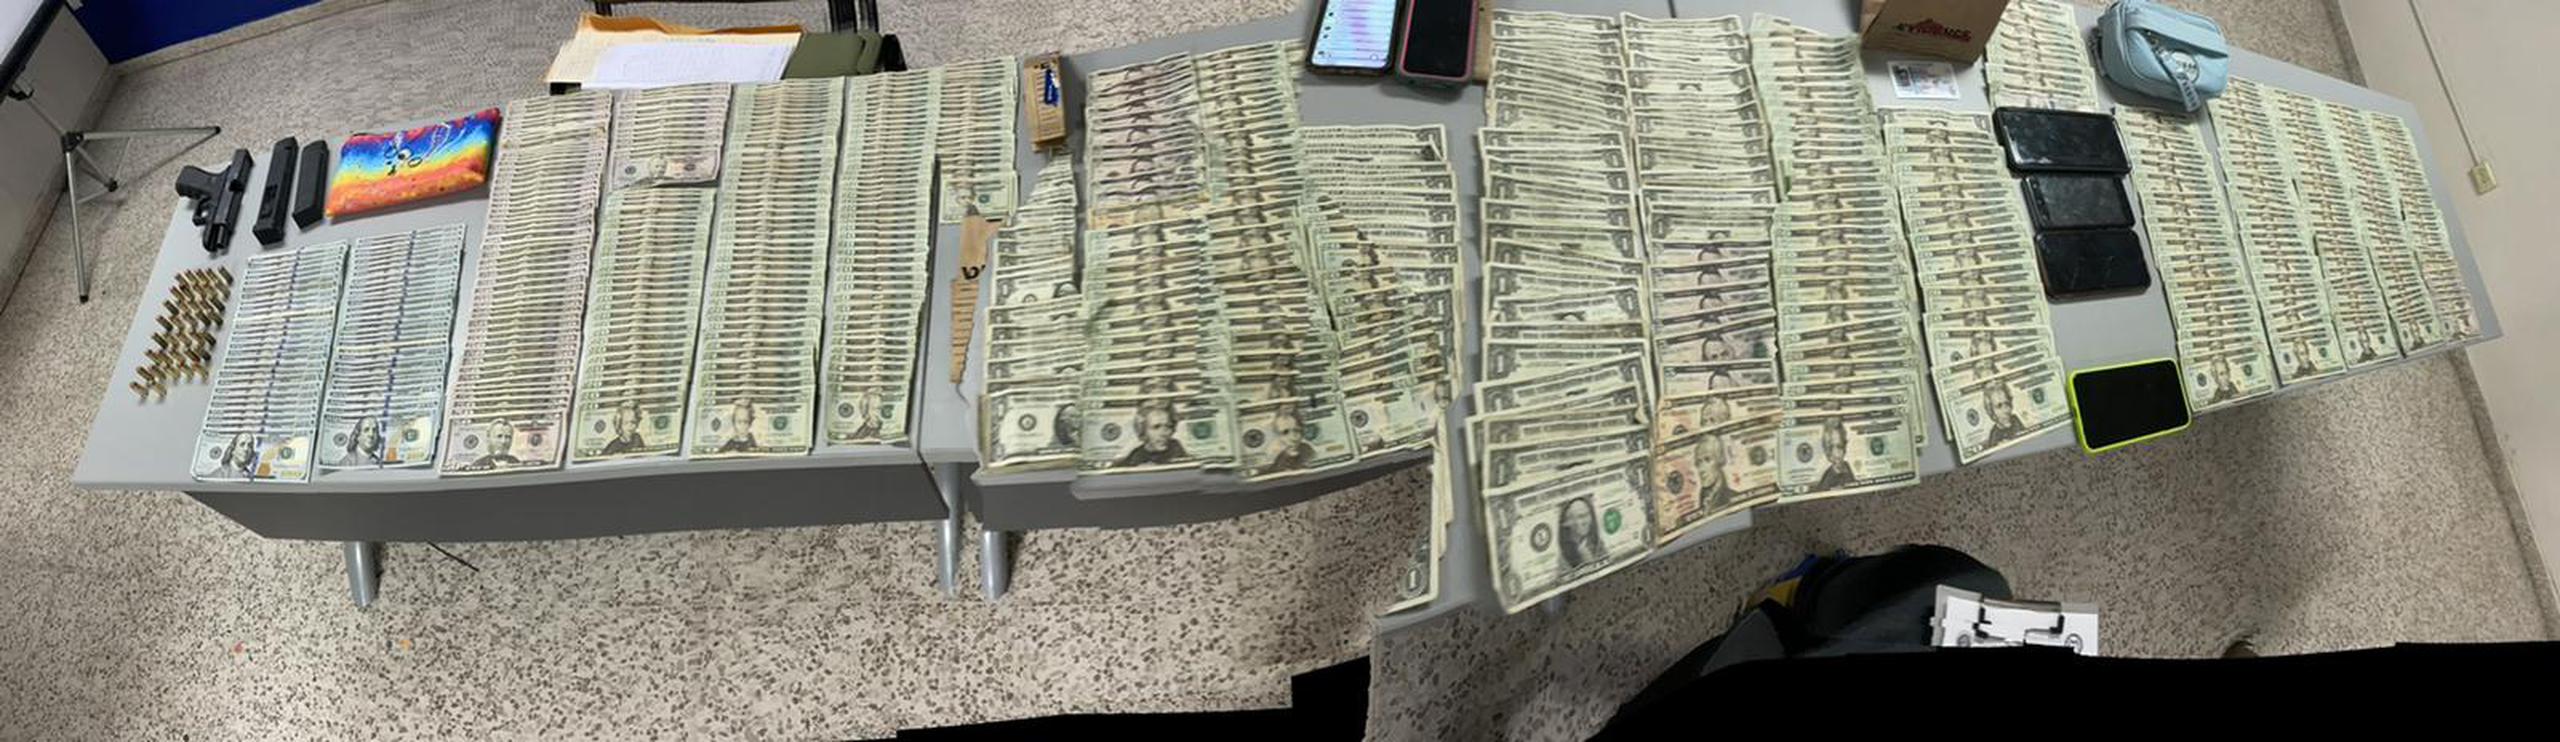 Cuatro personas fueron arrestadas, entre ellos un convicto federal, a quienes les ocuparon un arma ilegal, cargadores, balas y $17,719.00 en efectivo.